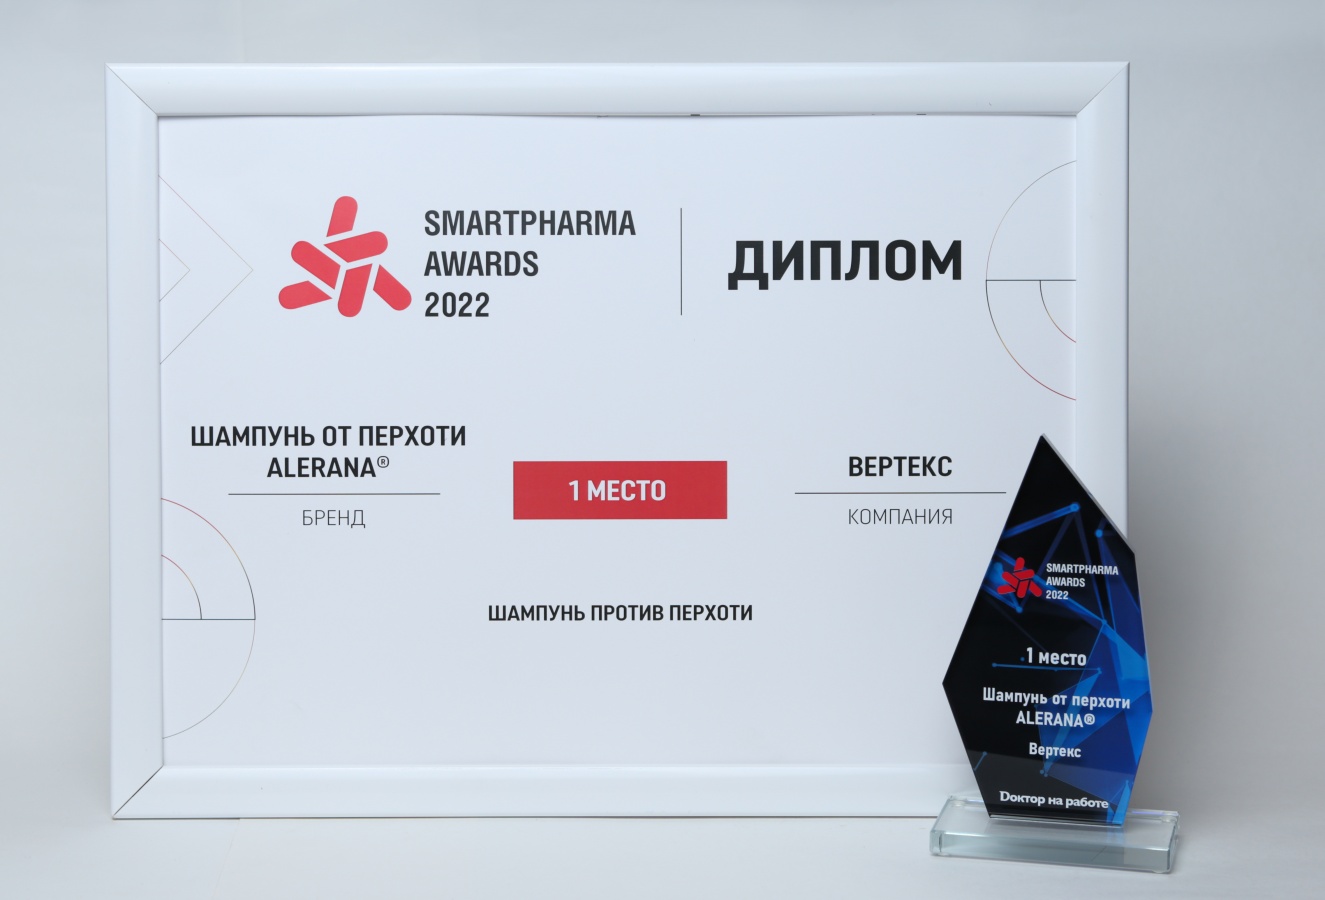 Smartpharma<sup>®</sup> Awards 2022: ALERANA<sup>®</sup> - первое место в номинации «Шампунь против перхоти»